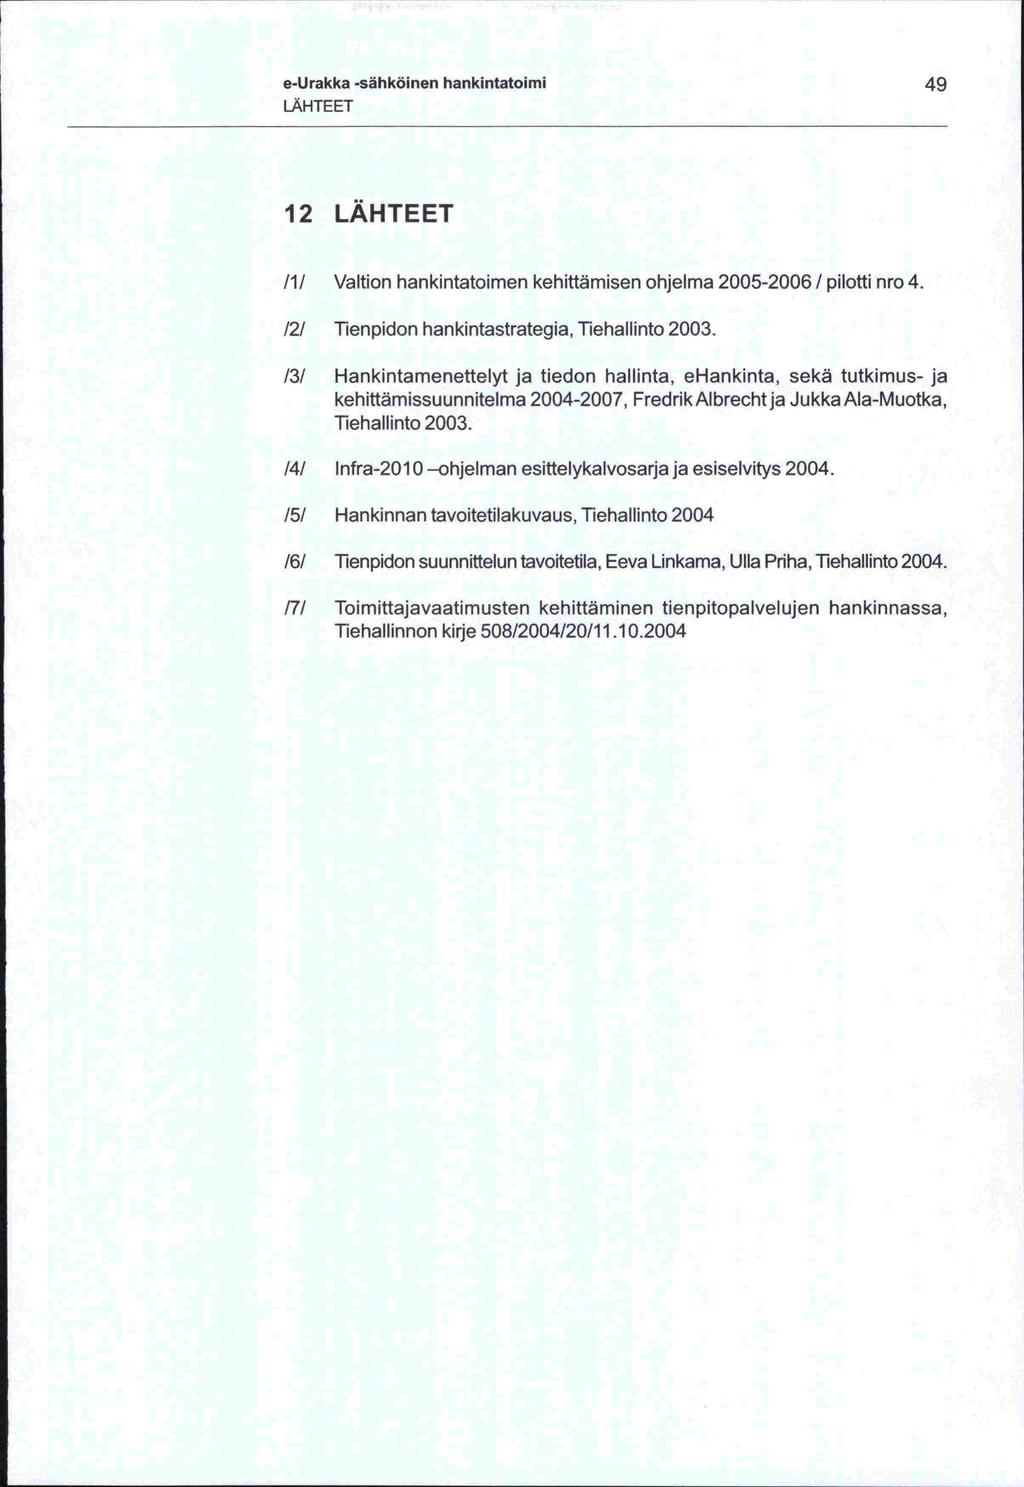 e-urakka -sähköinen hankintatoimi LÄHTEET 12 LÄHTEET /1/ Valtion hankintatoimen kehittämisen ohjelma 2005-2006 / pilotti nro 4 /2/ Tienpidon hankintastrategia, Tiehallinto 2003.